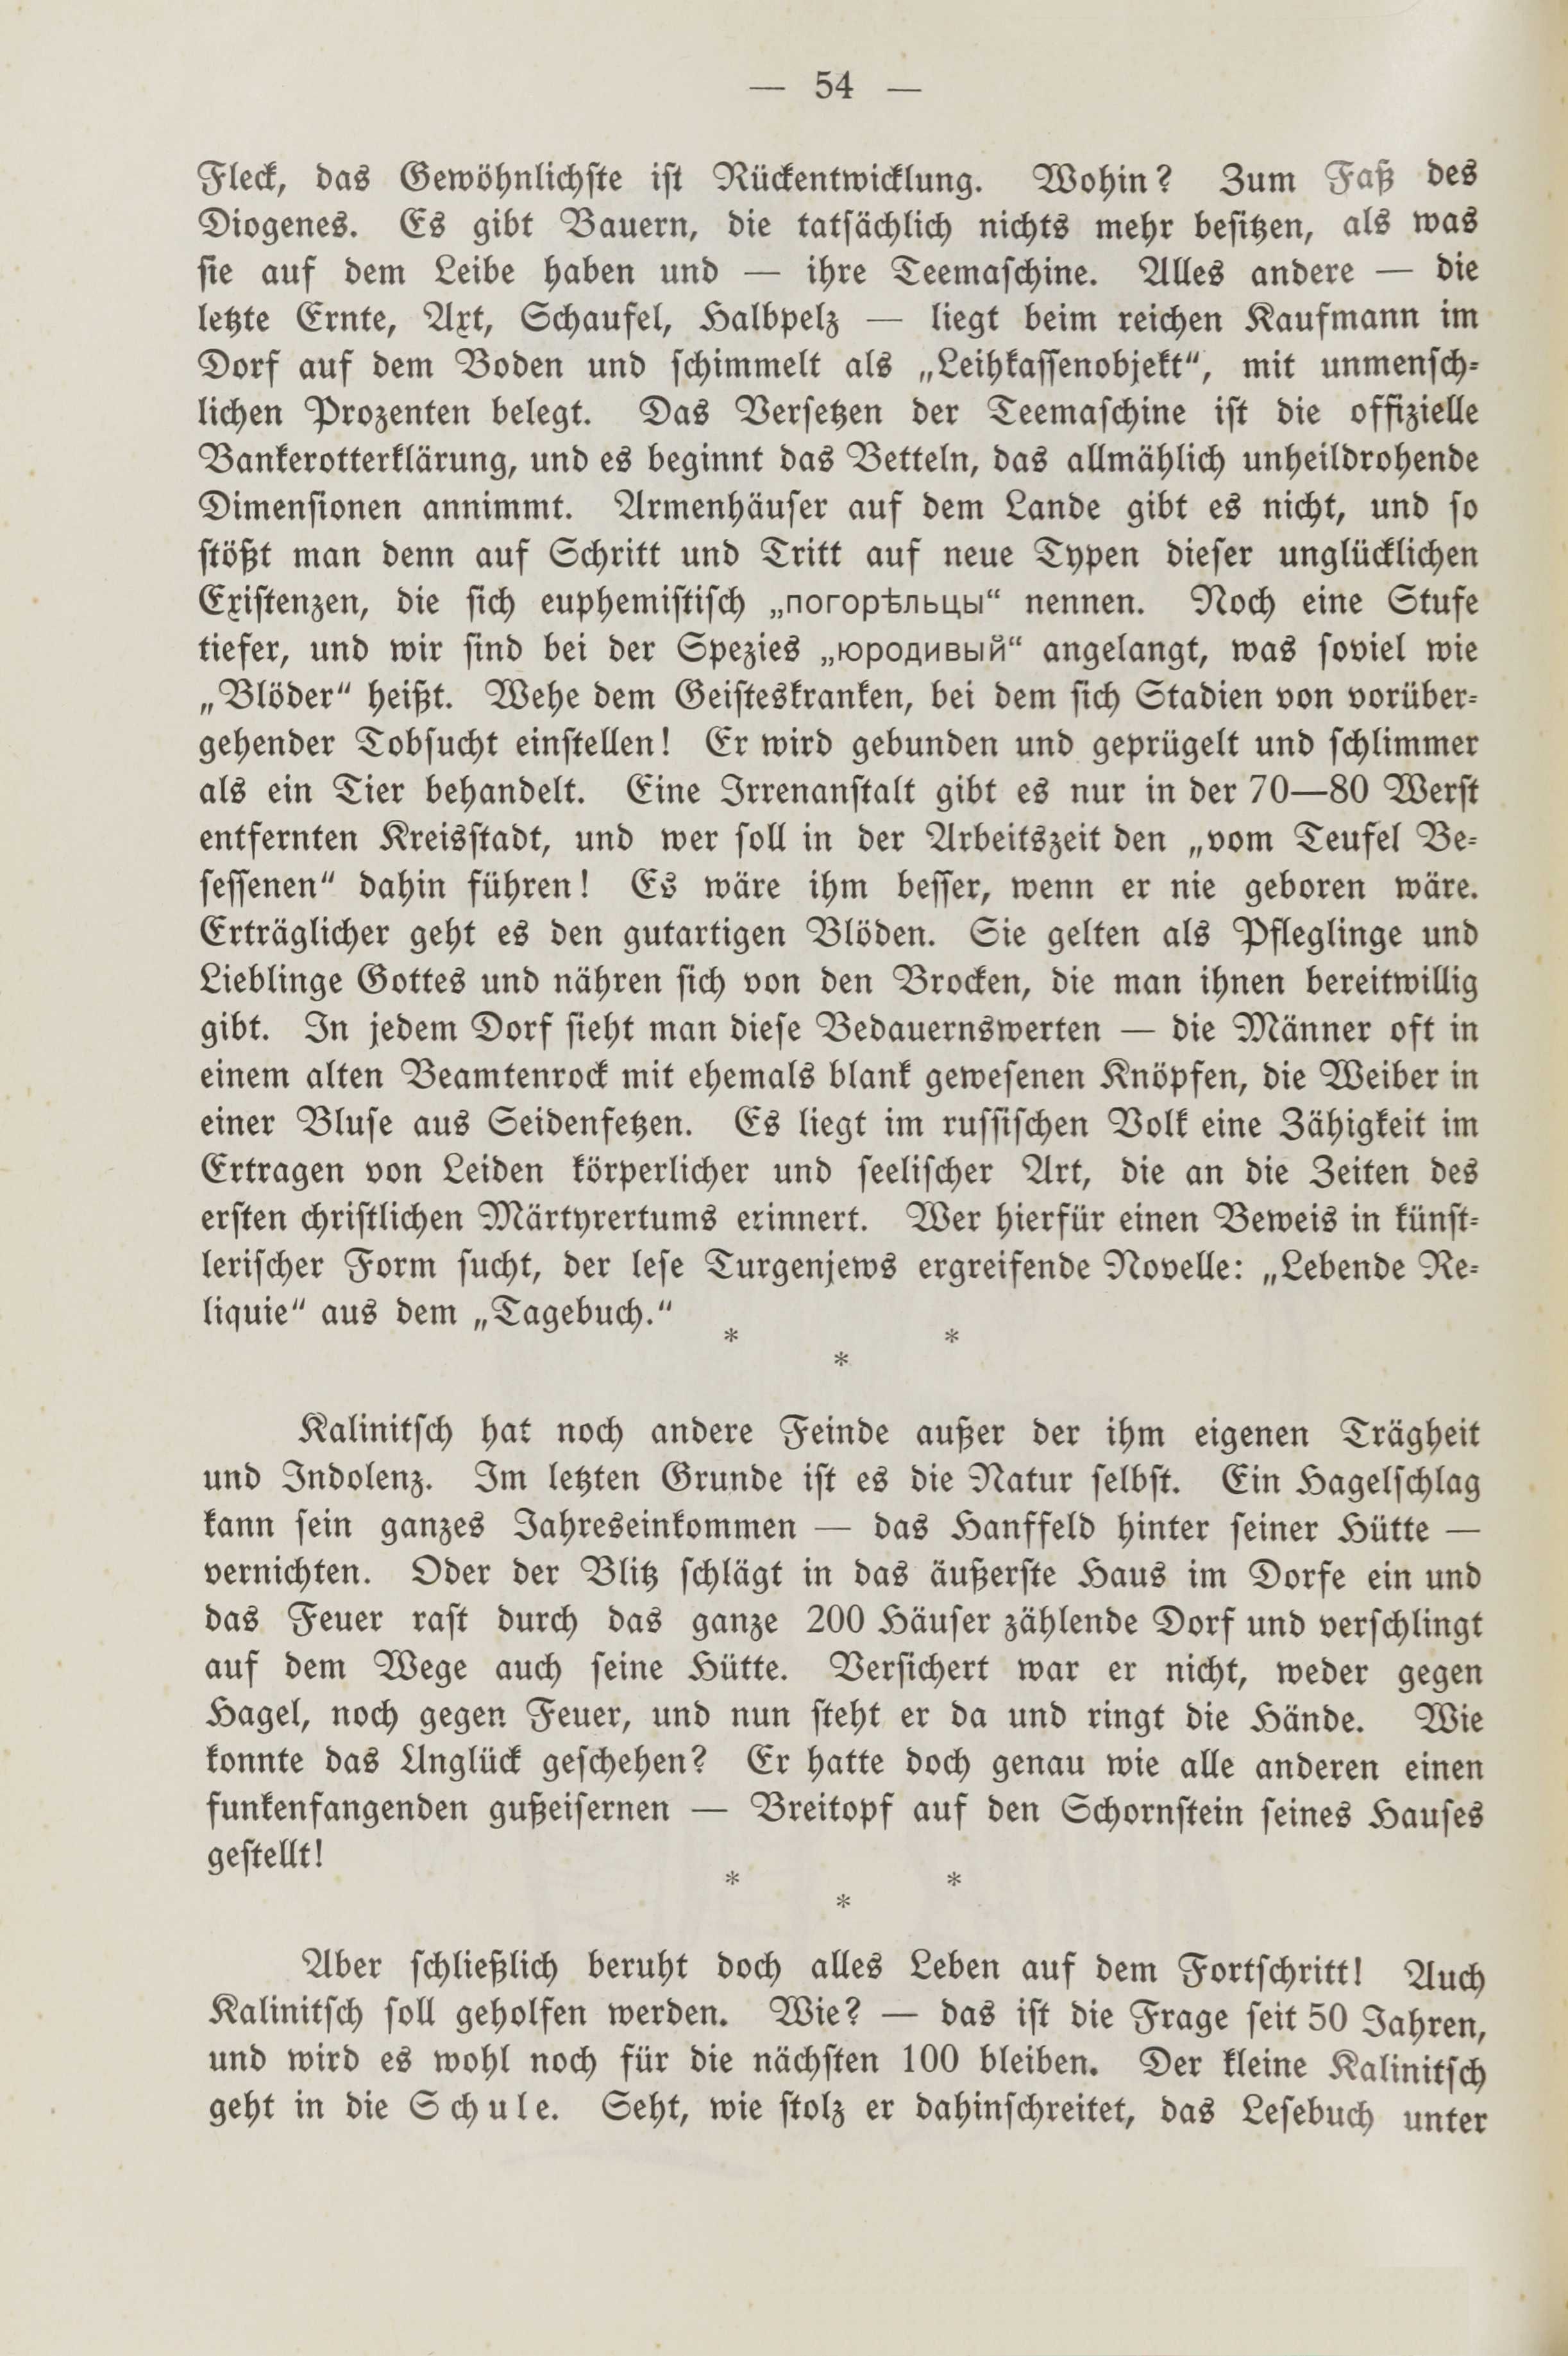 Deutsche Monatsschrift für Russland [2] (1913) | 58. (54) Основной текст